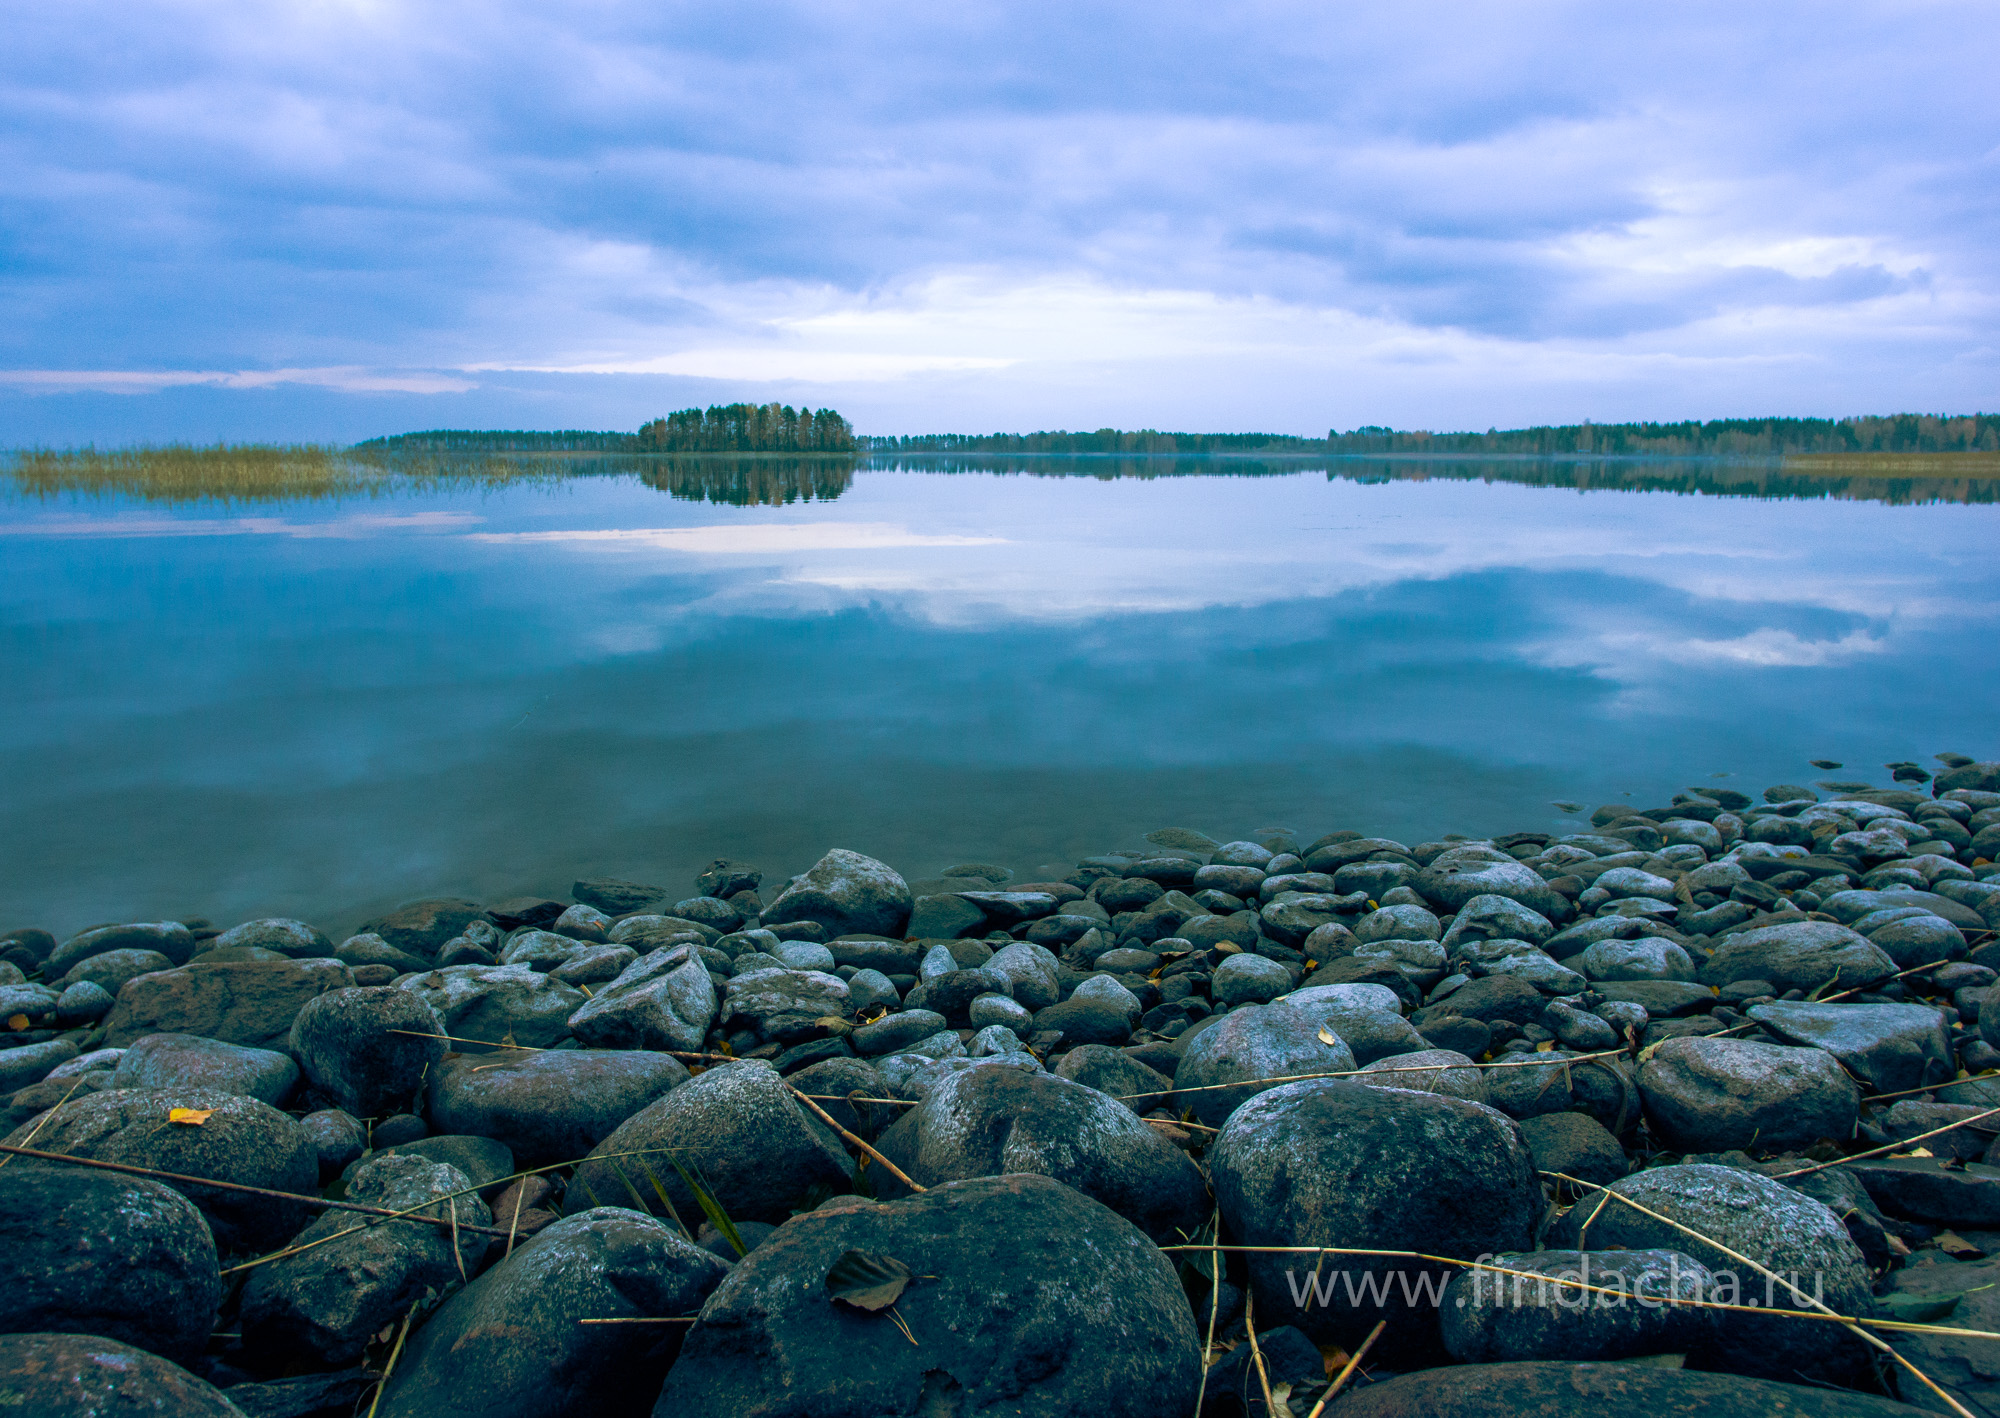   Чистая вода  88% озер и рек Финляндии имеют воду, пригодную для питья 